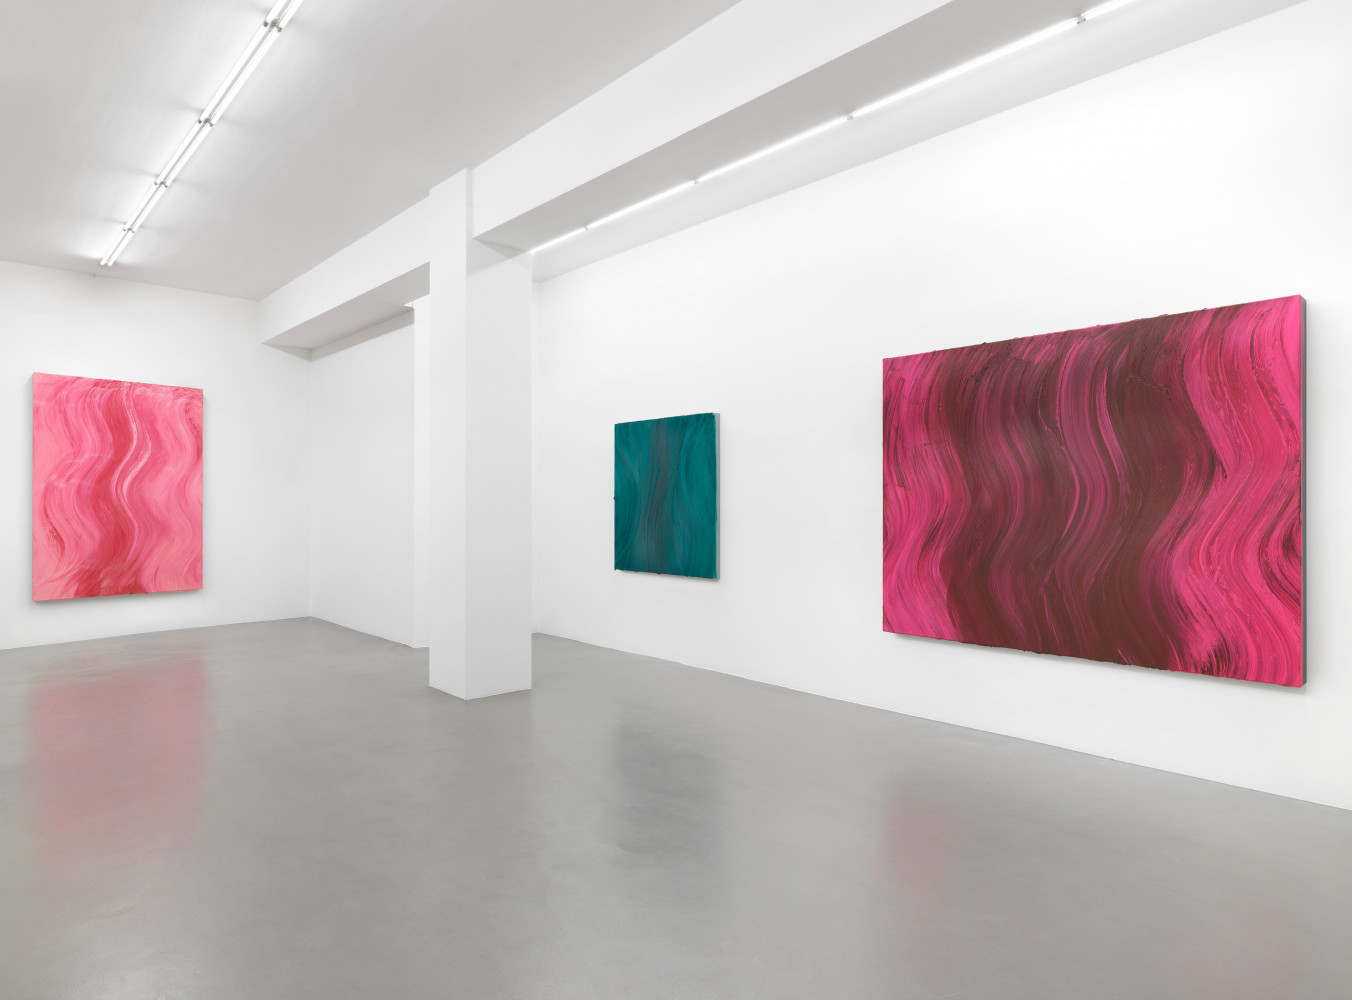 Jason Martin, ‘Polychrome Futures’, Installationsansicht, Buchmann Galerie, 2020